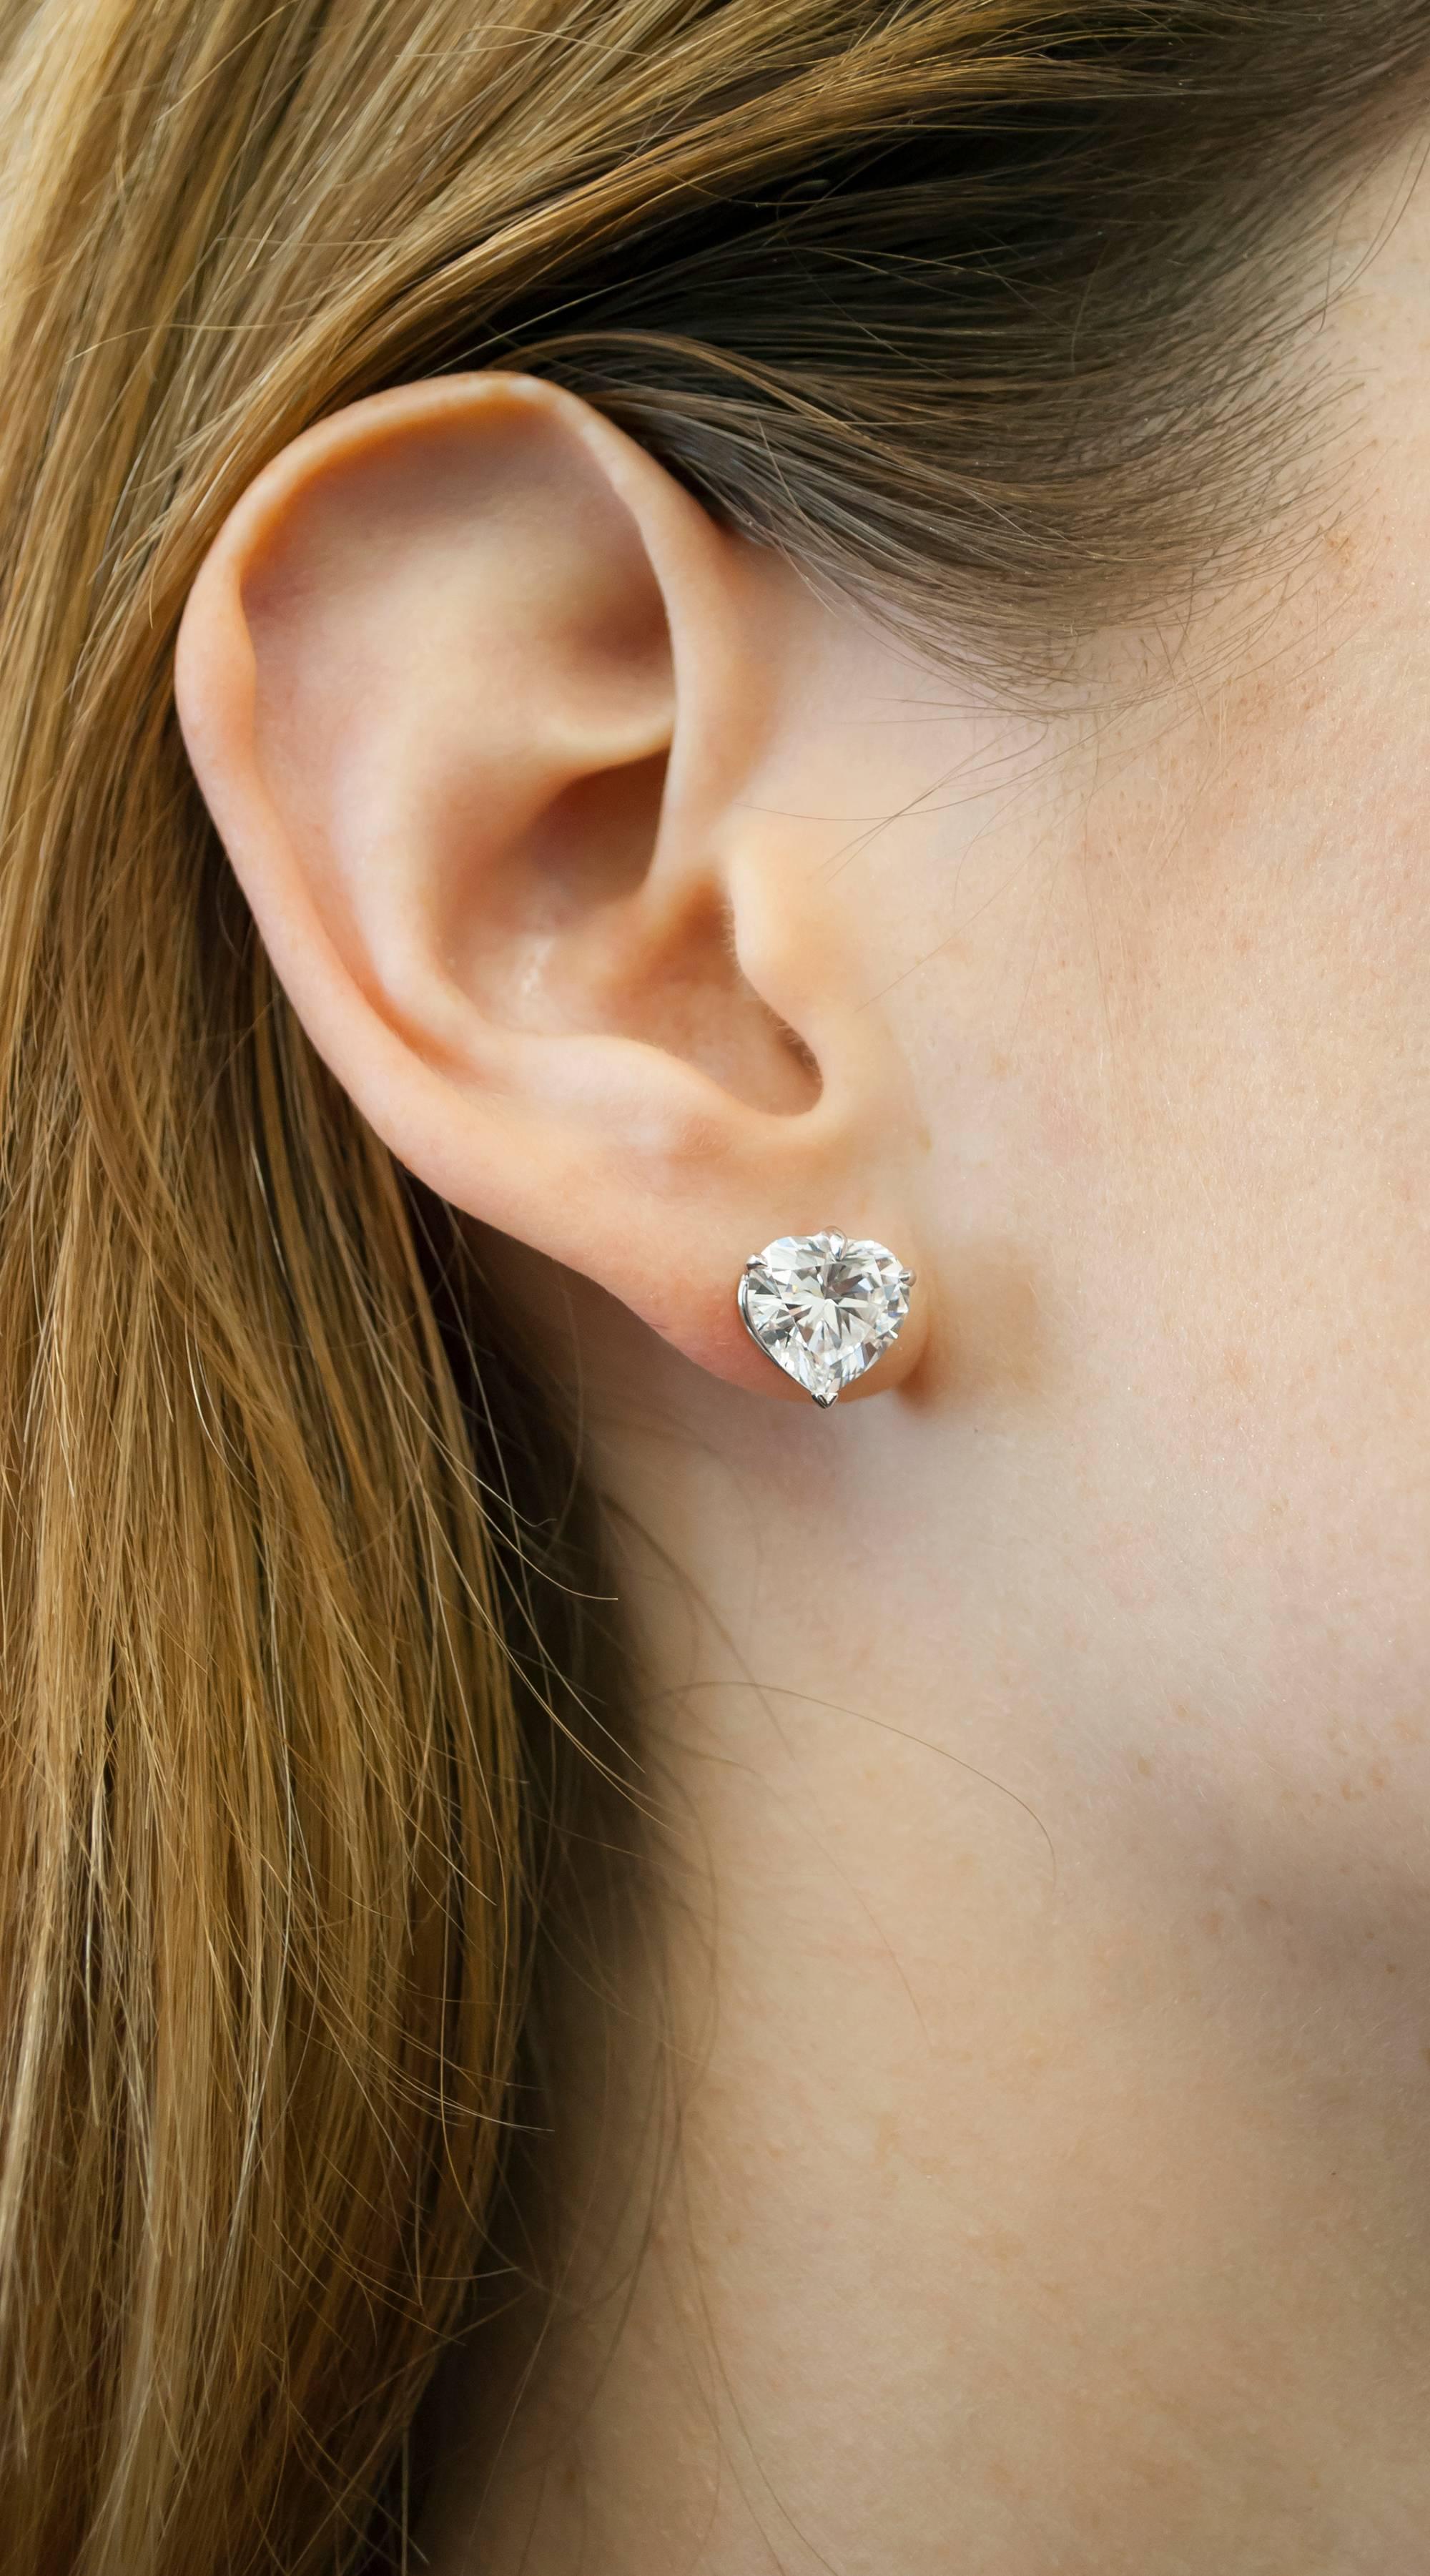 Clous d'oreilles en forme de cœur en diamant certifié GIA de 2 carats 
Clarté VVS1
Couleur D/E

